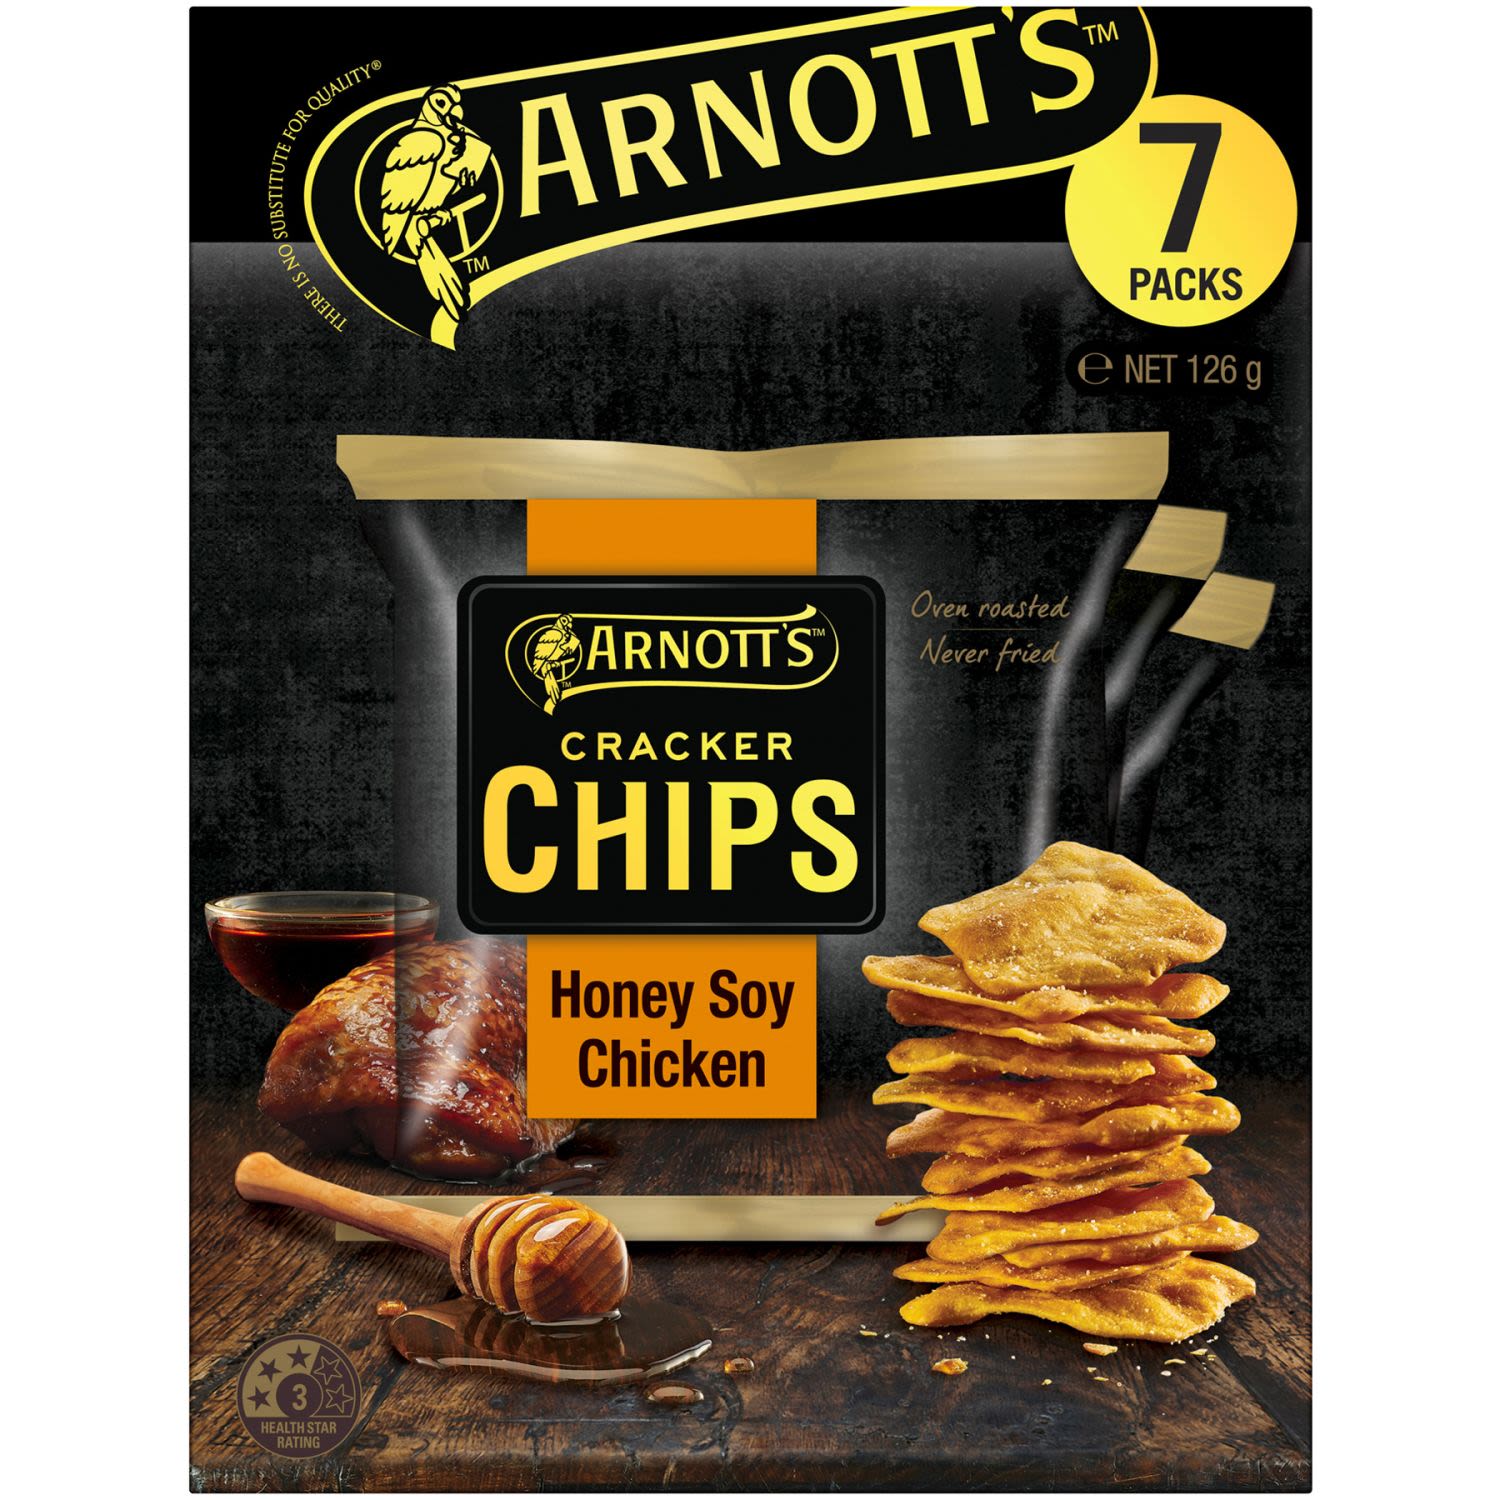 Arnott's Cracker Chips Honey Soy Chicken Multipack, 7 Each